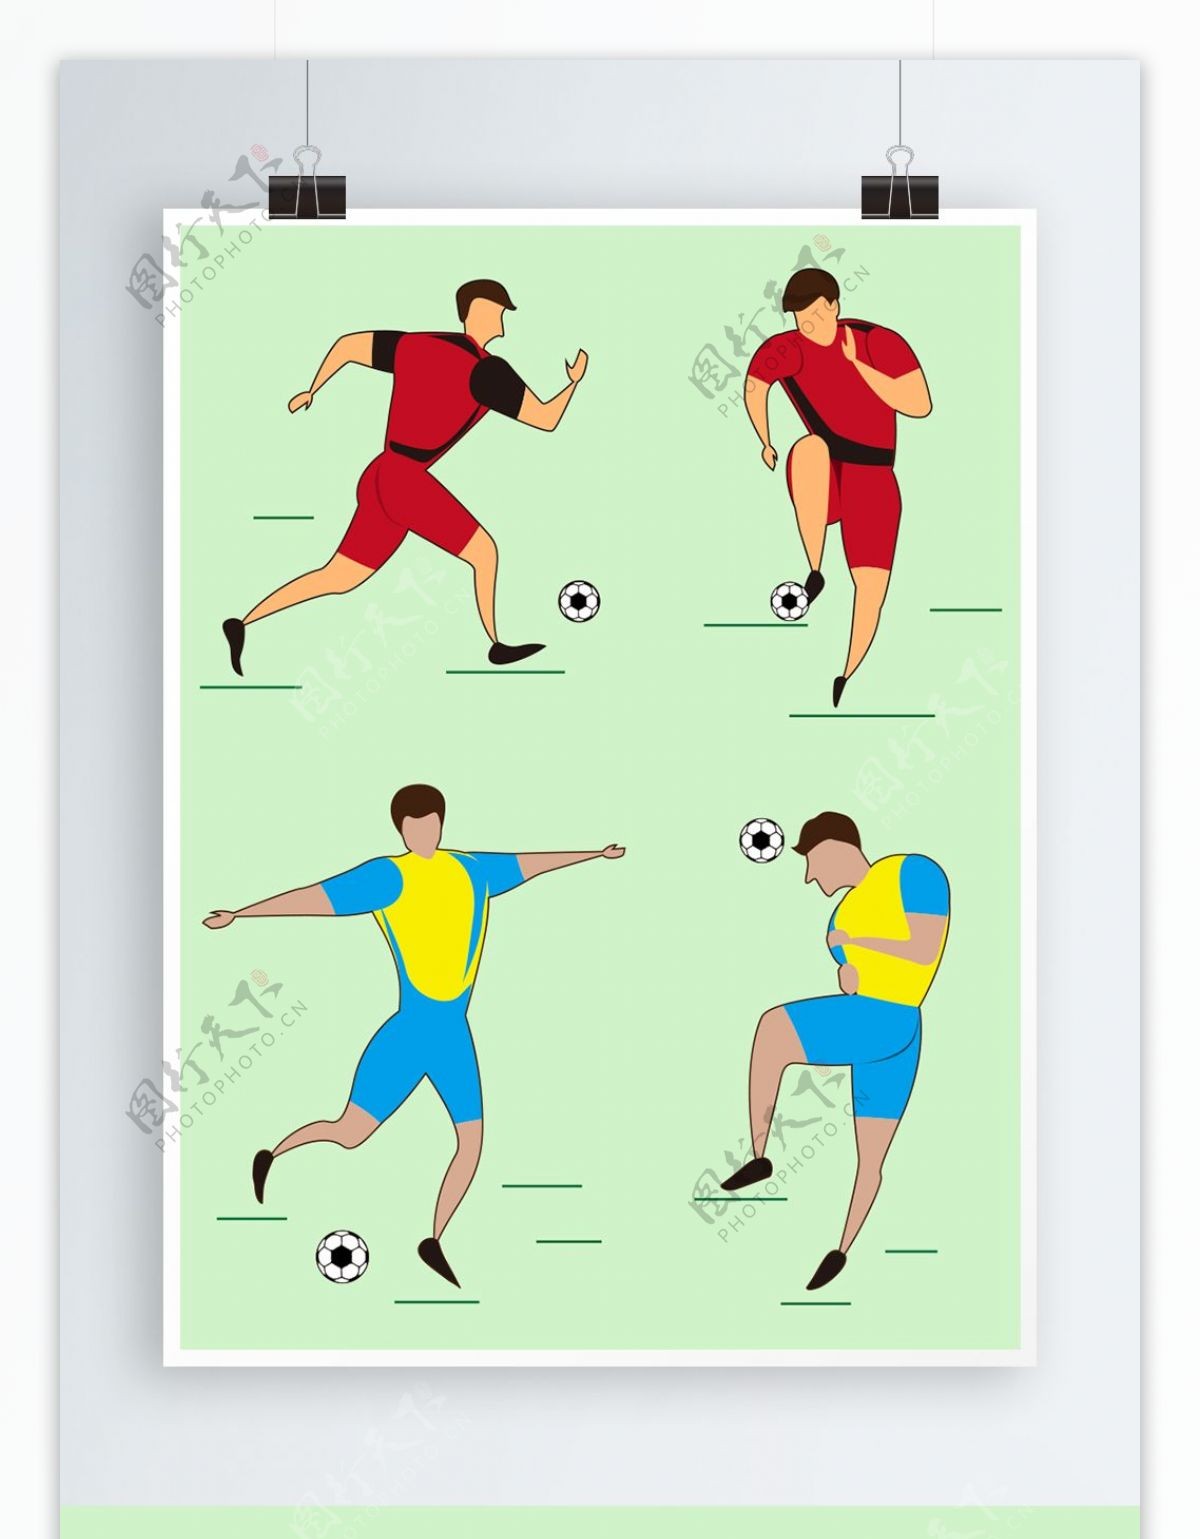 世界杯踢球运动员简约插画原创设计元素